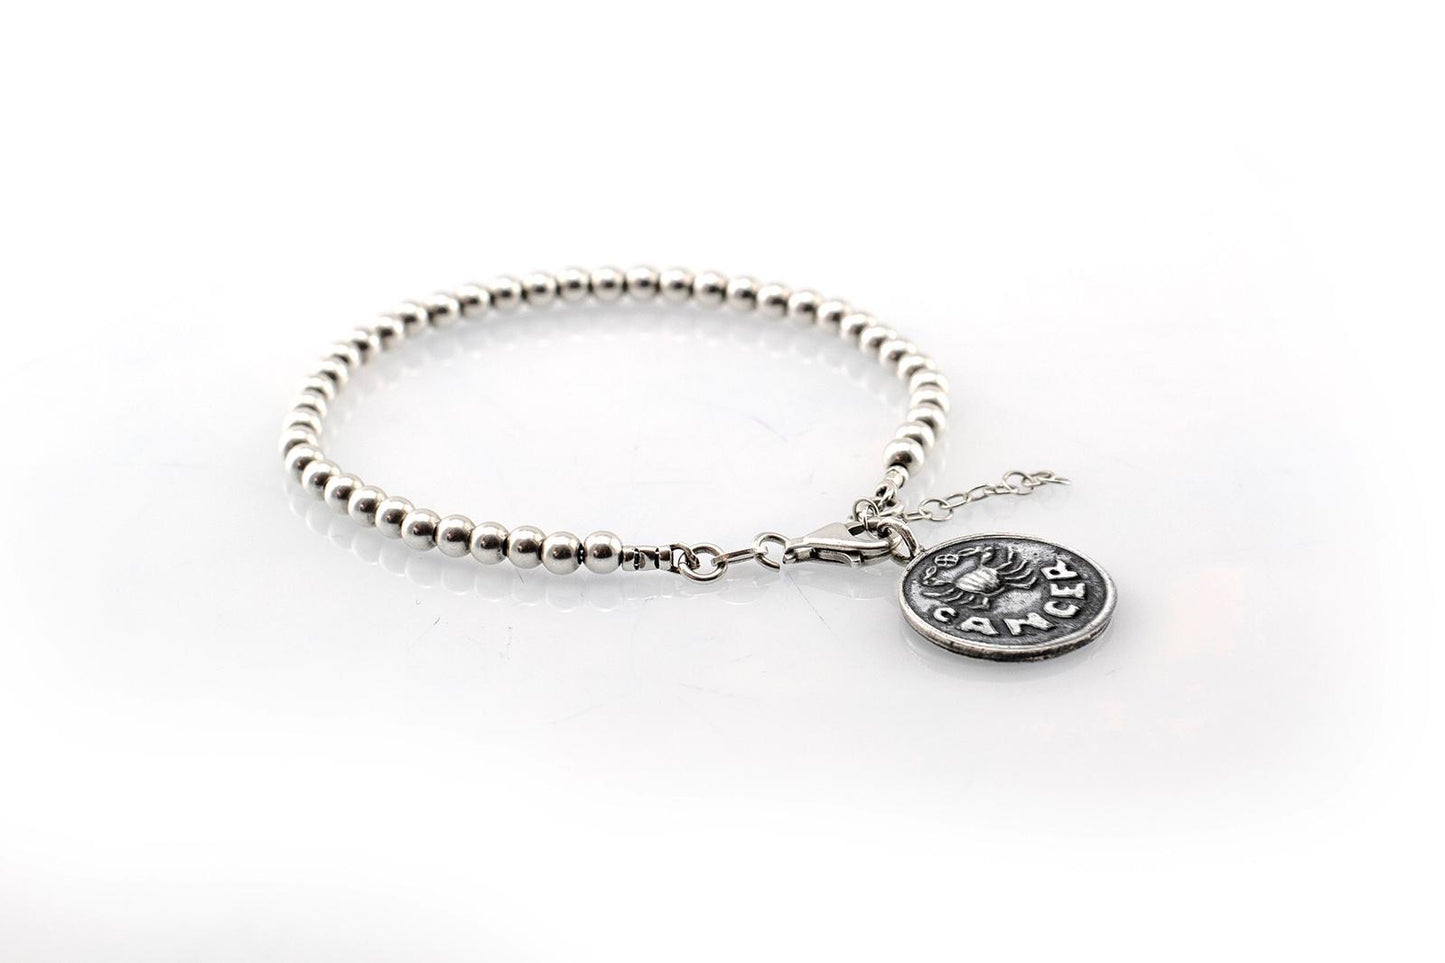 Cancer medallion with a Bead Bracelet -Zodiac jewelry -One of kind jewelry